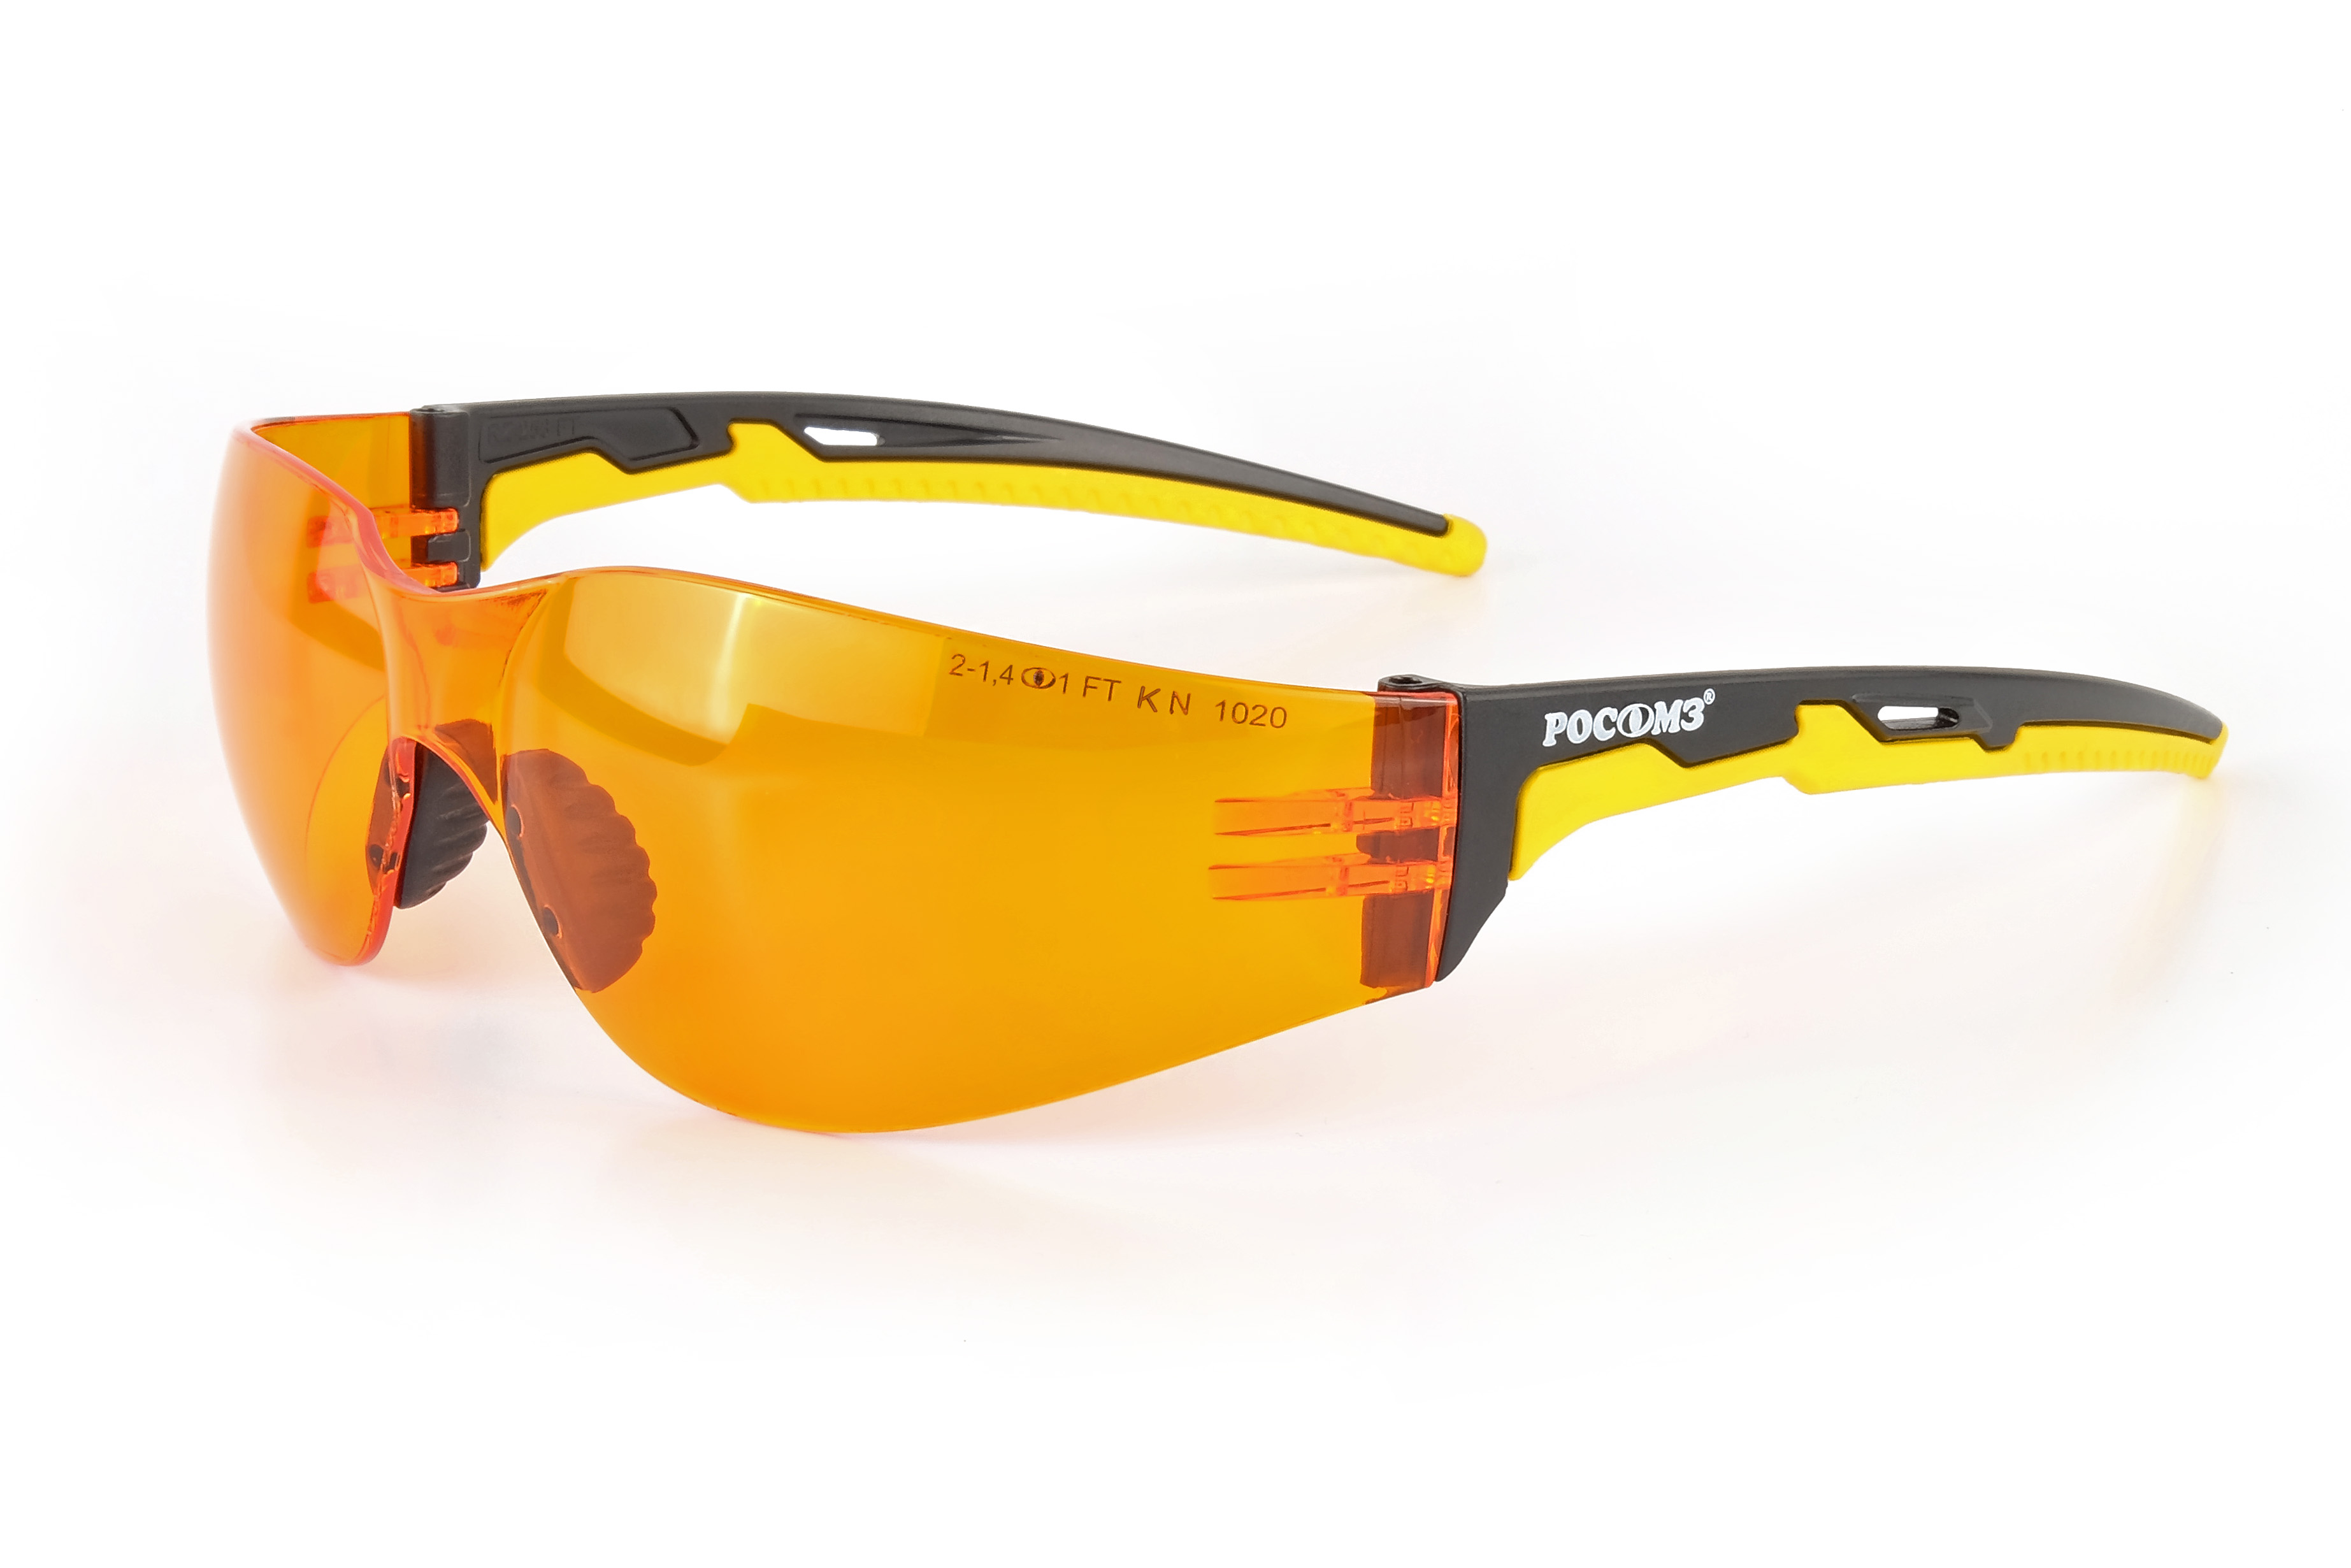 О15 HAMMER ACTIVЕ Strong Glass (2-1,4 PC) очки защитные открытые с мягким носоупором